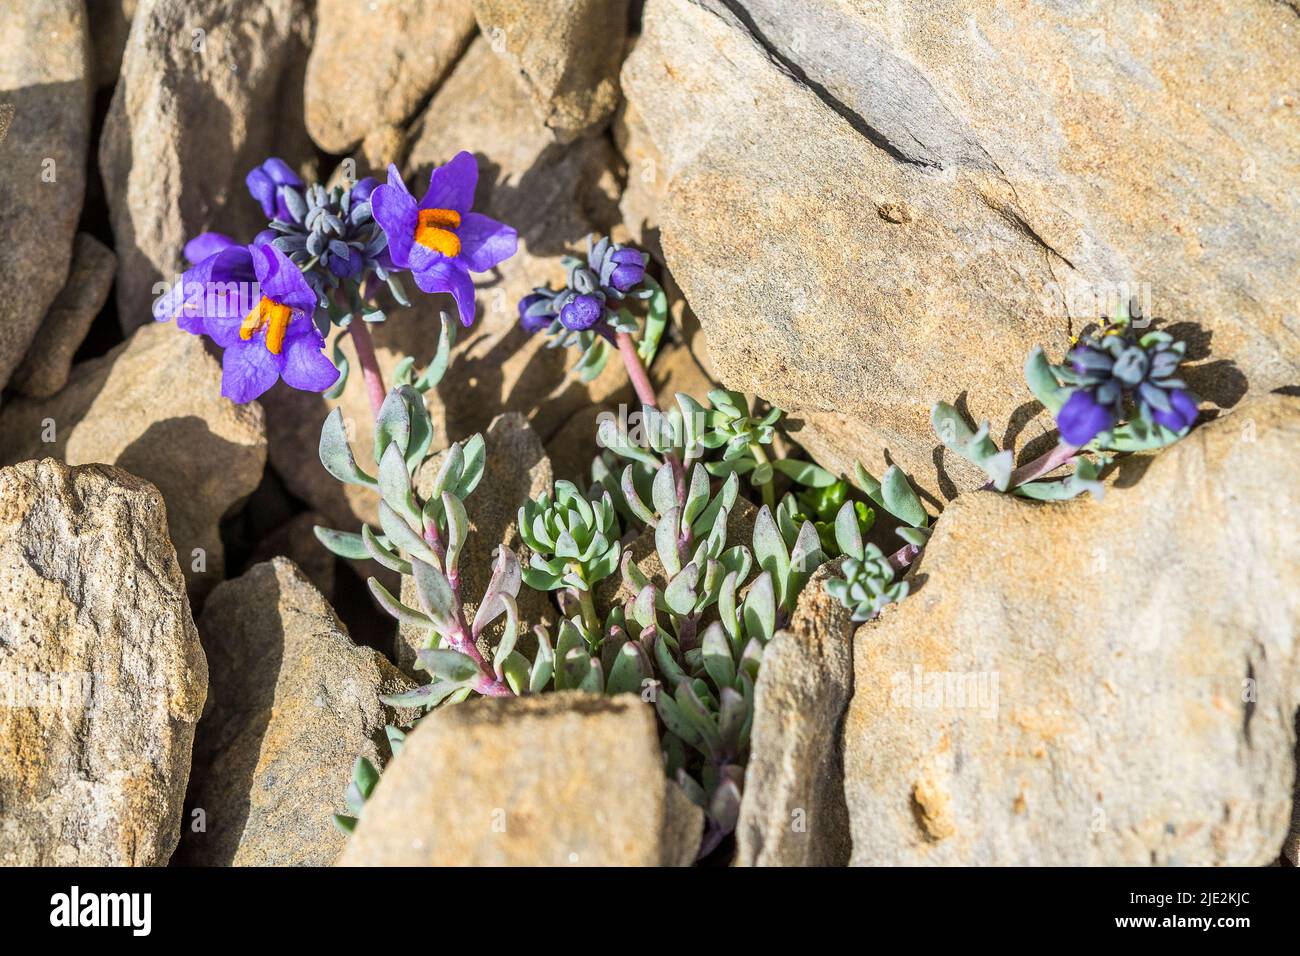 La linaria alpina, a volte chiamata taadflax alpino, è una pianta a fiore di porpora originaria delle zone montuose dell'Europa centrale e meridionale. Foto Stock